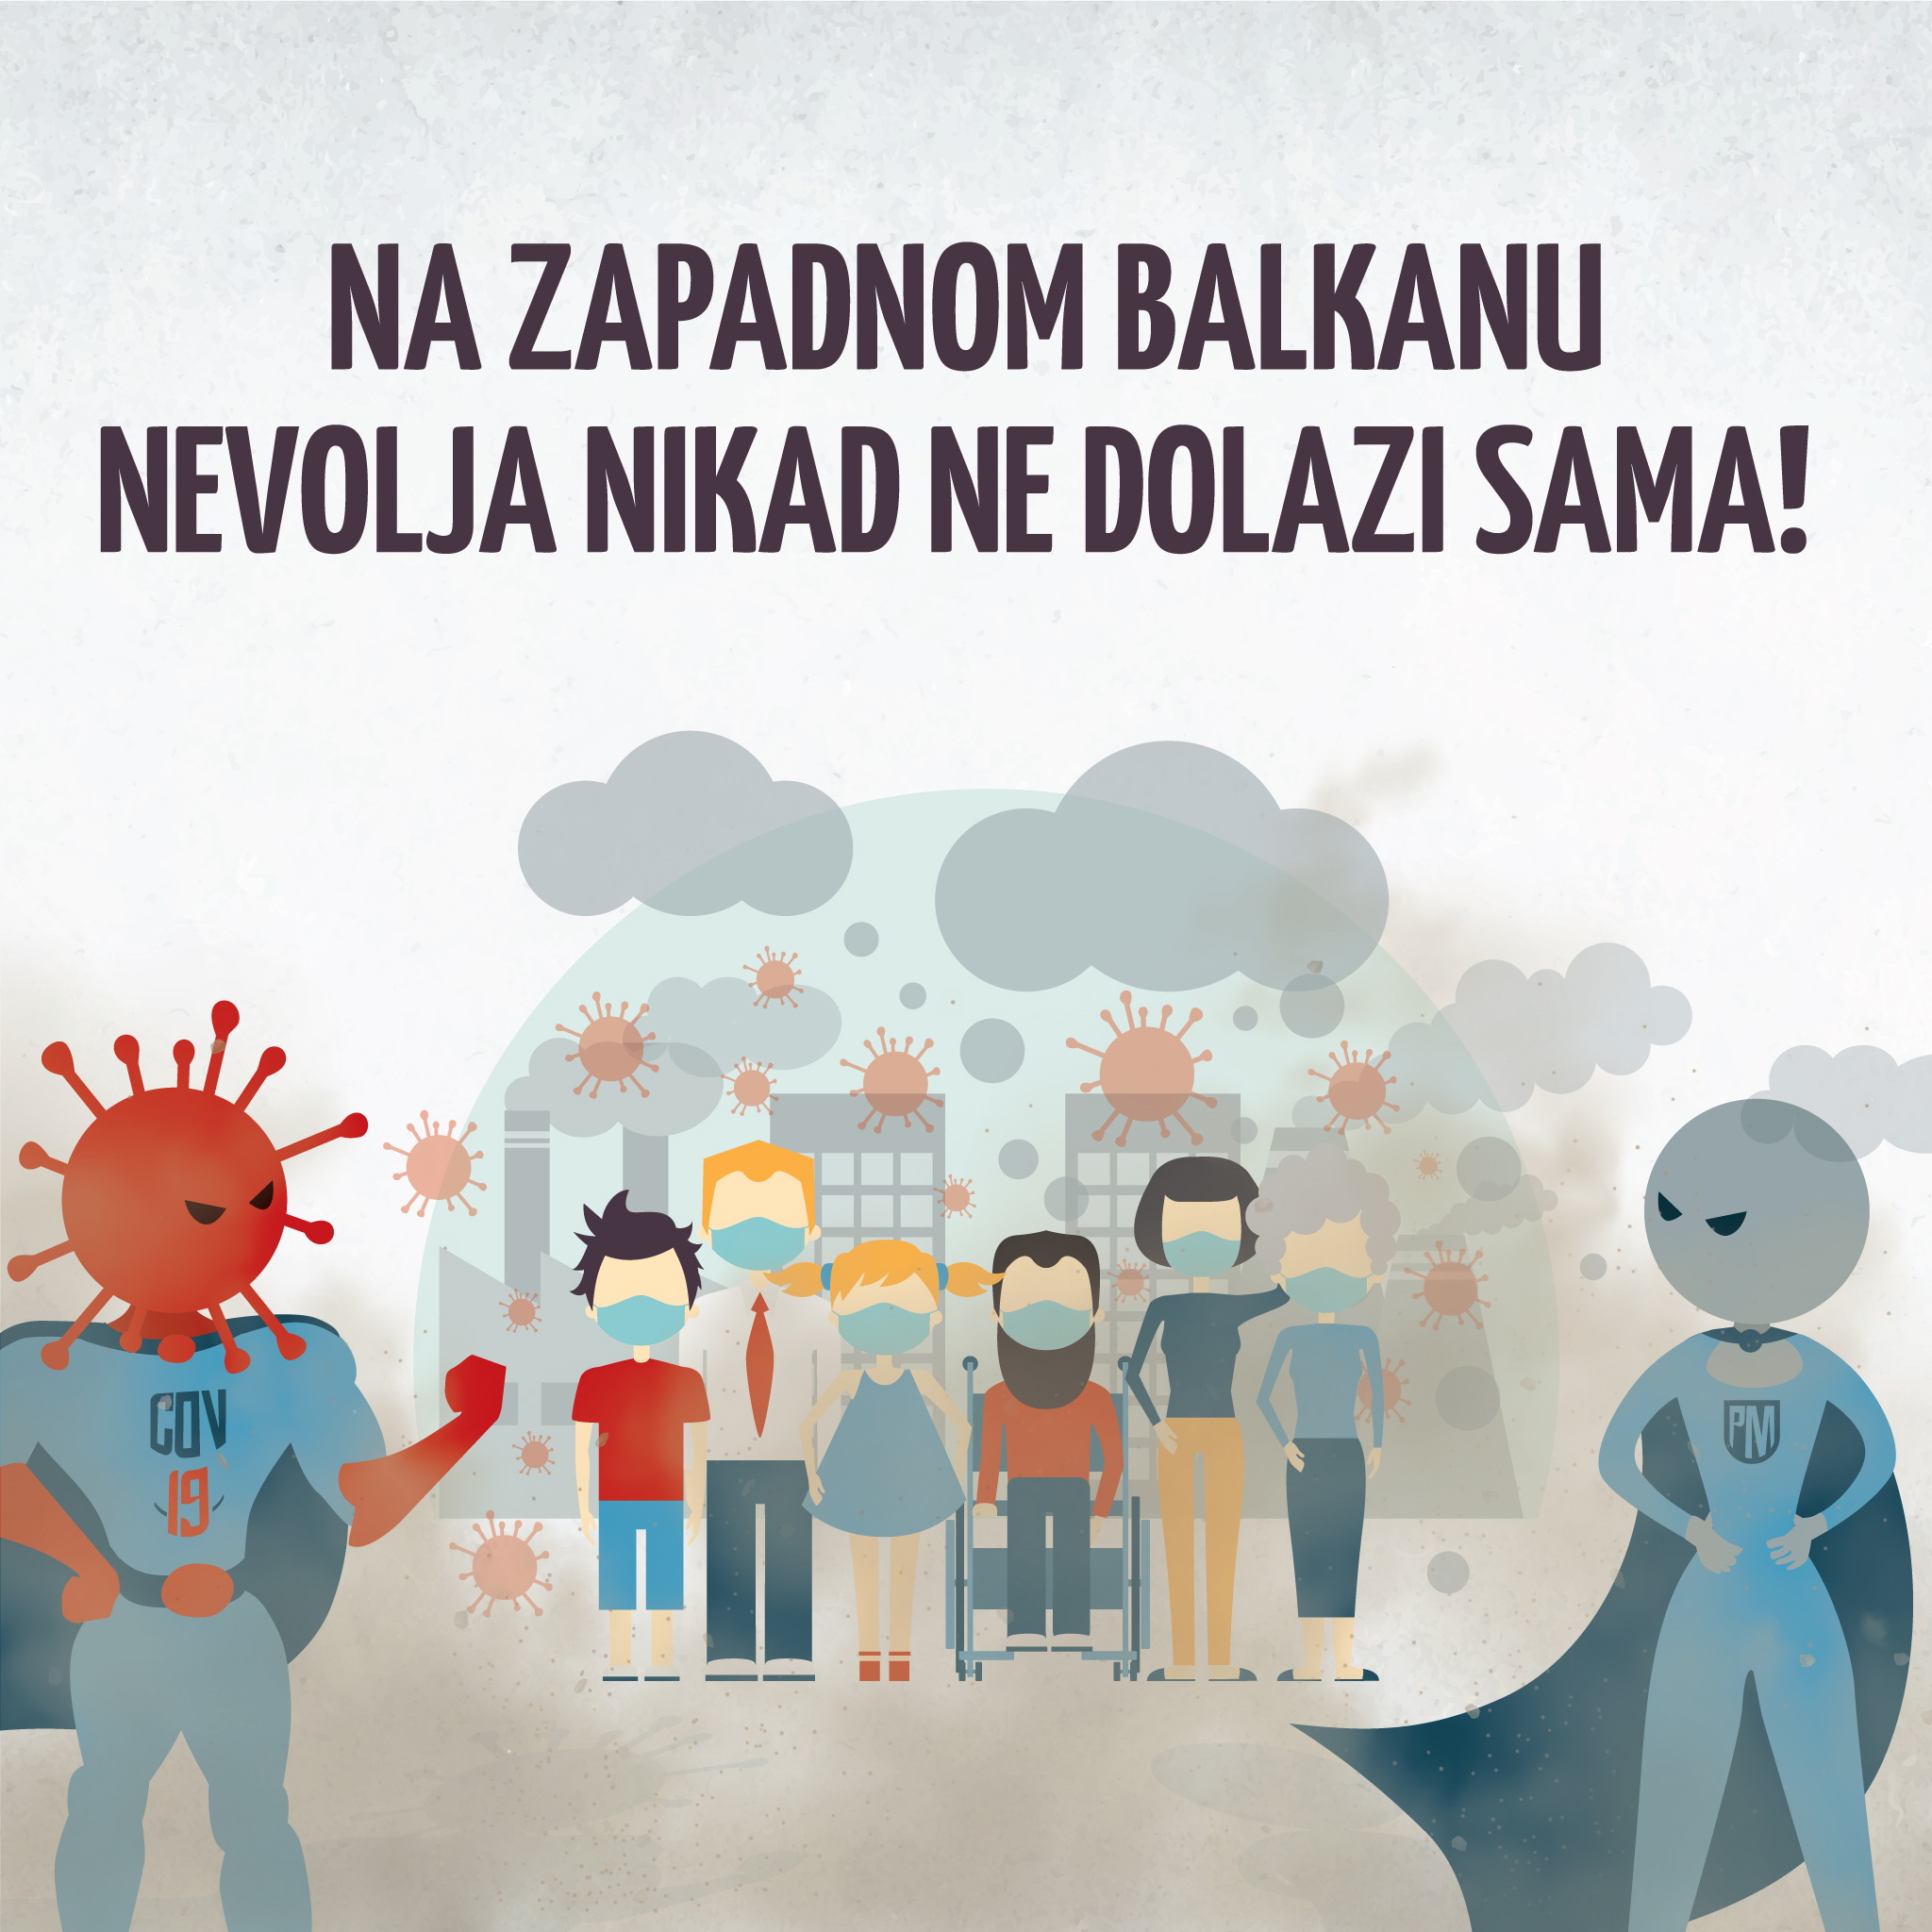 Fond “Majka Savica” nagradjuje sa 1000 Eur Najljubaznijeg zdravstvenog radnika-cu u Crnoj Gori u 2021.godini